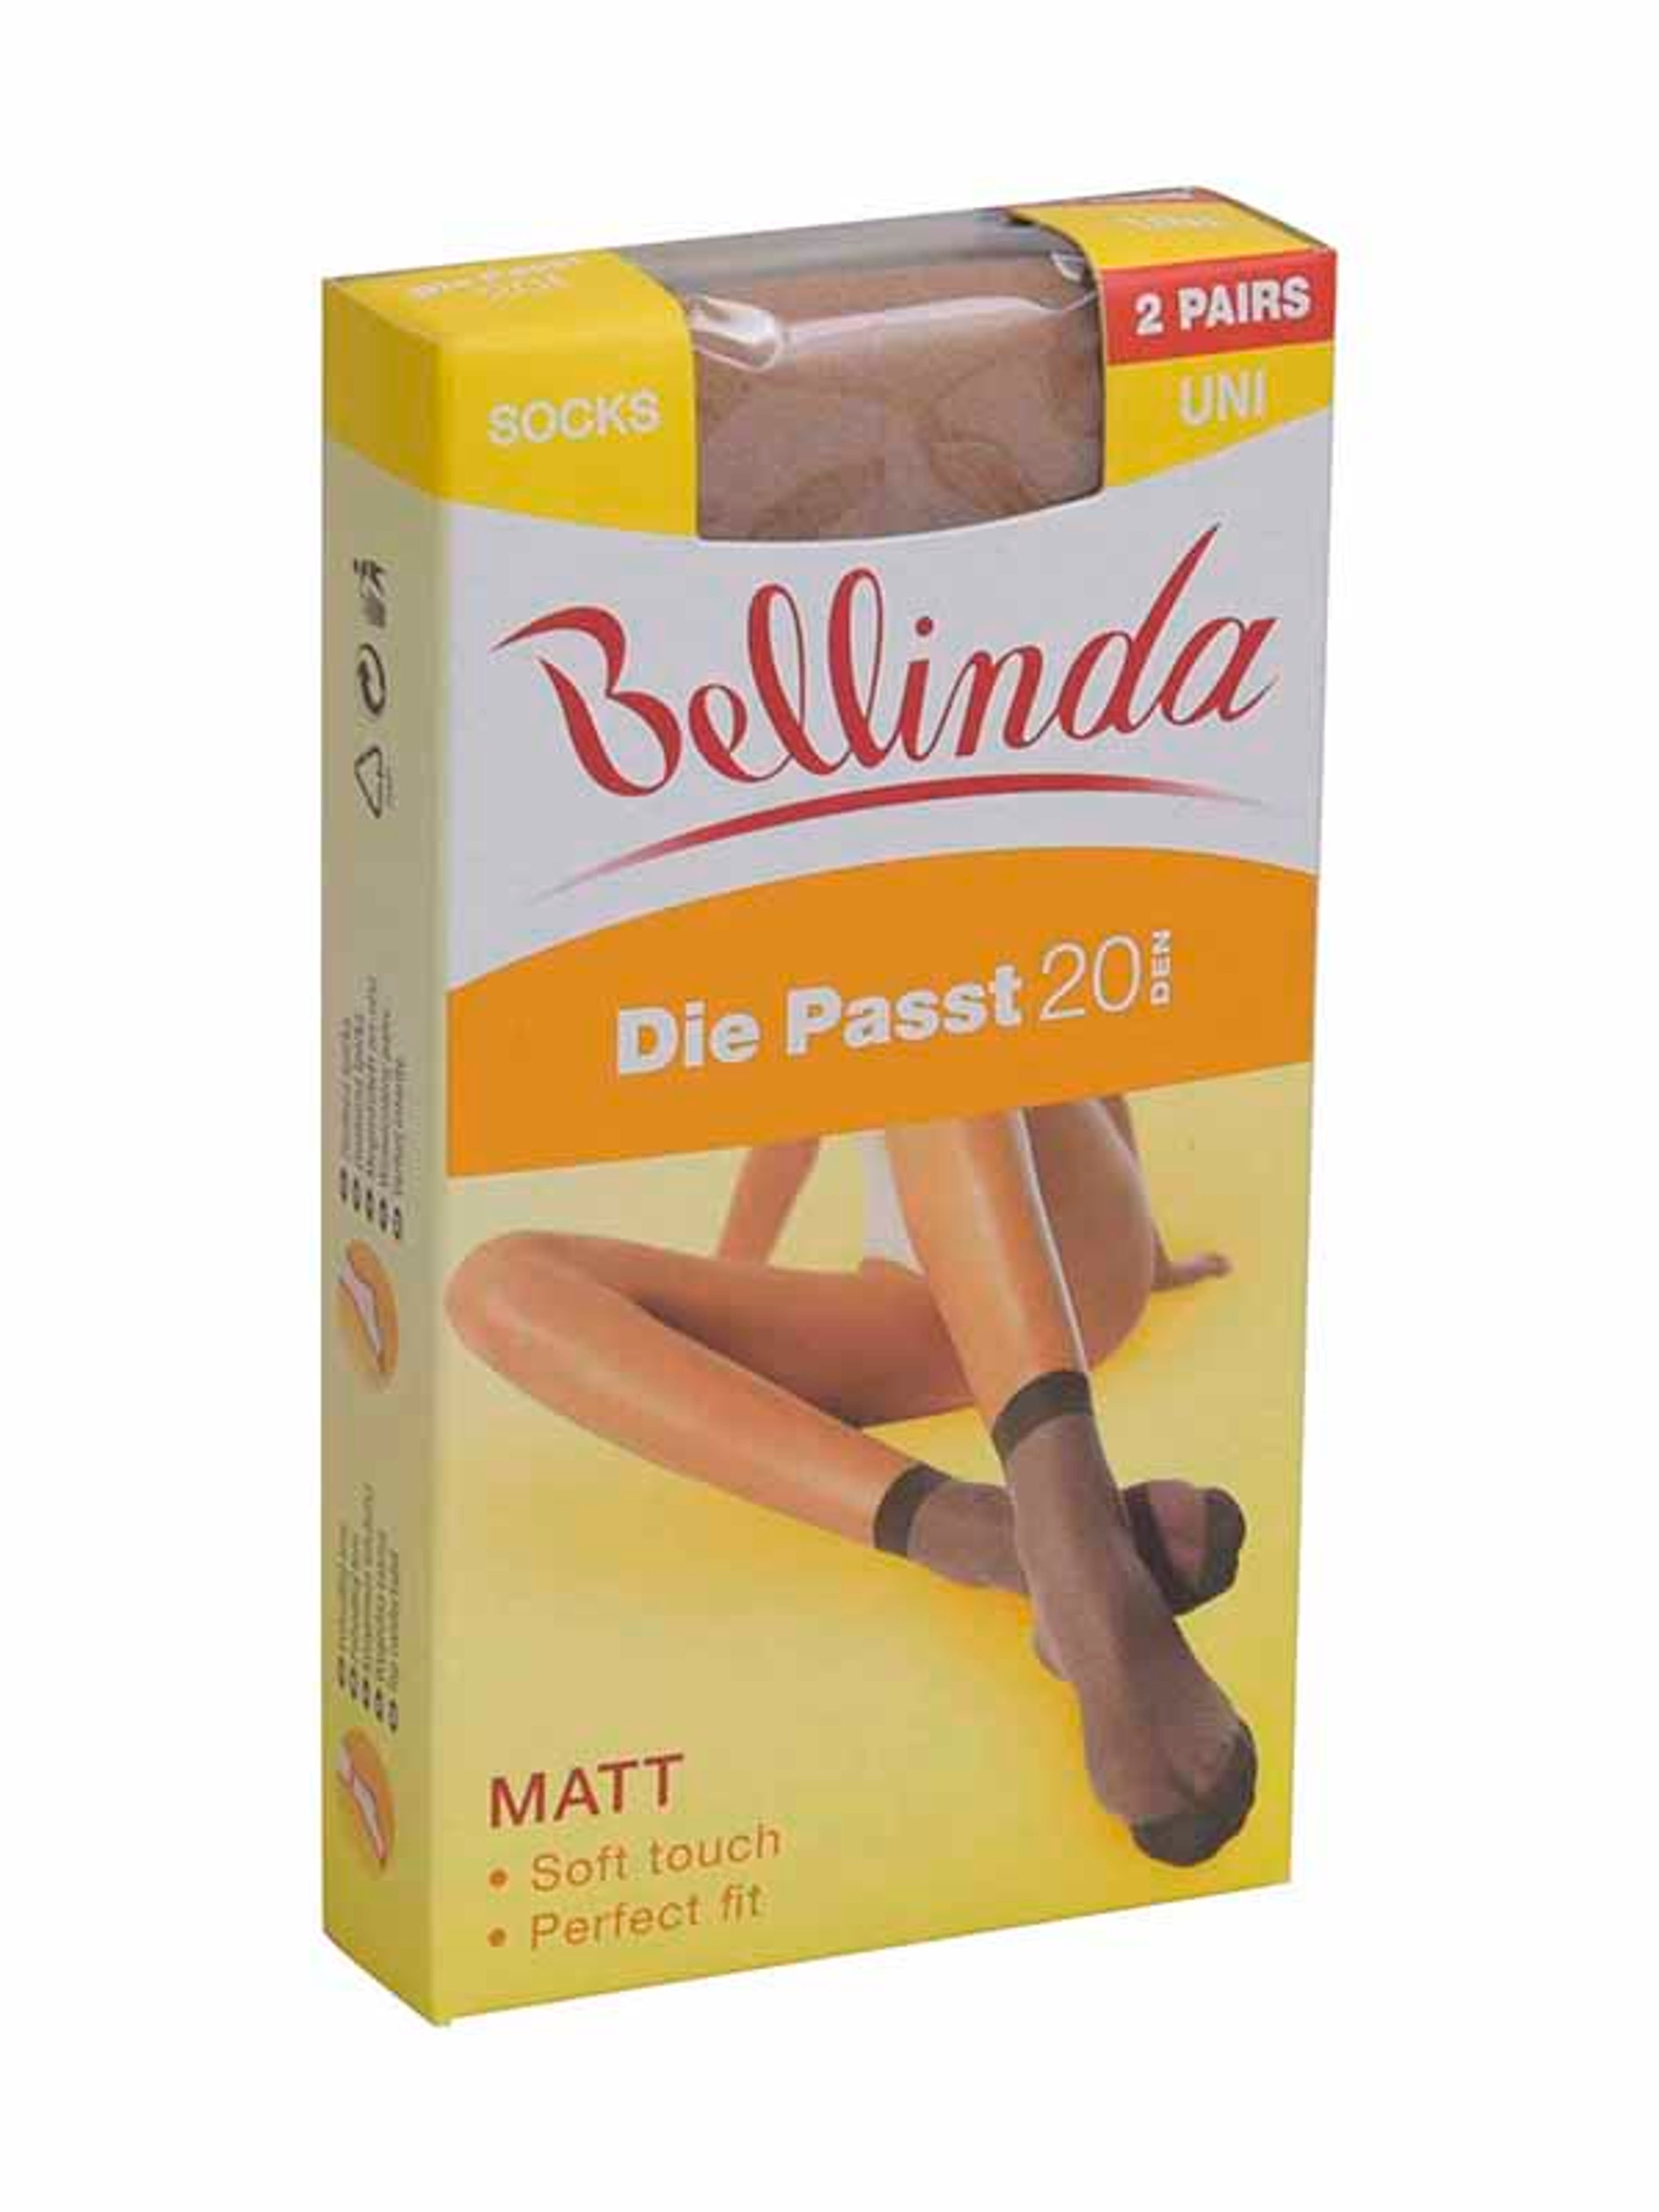 Bellinda Die Passt 20 Den Almond Bokafix - 1 db-1